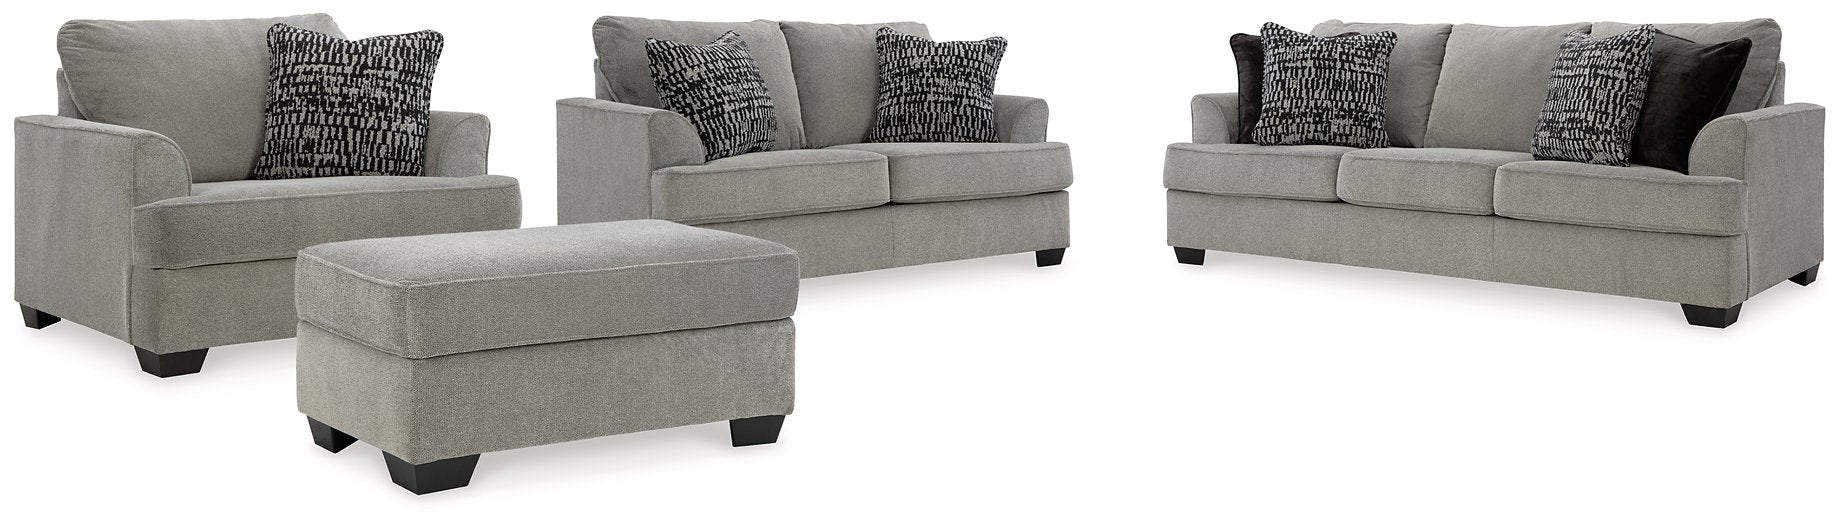 Deakin Living Room Set - Evans Furniture (CO)